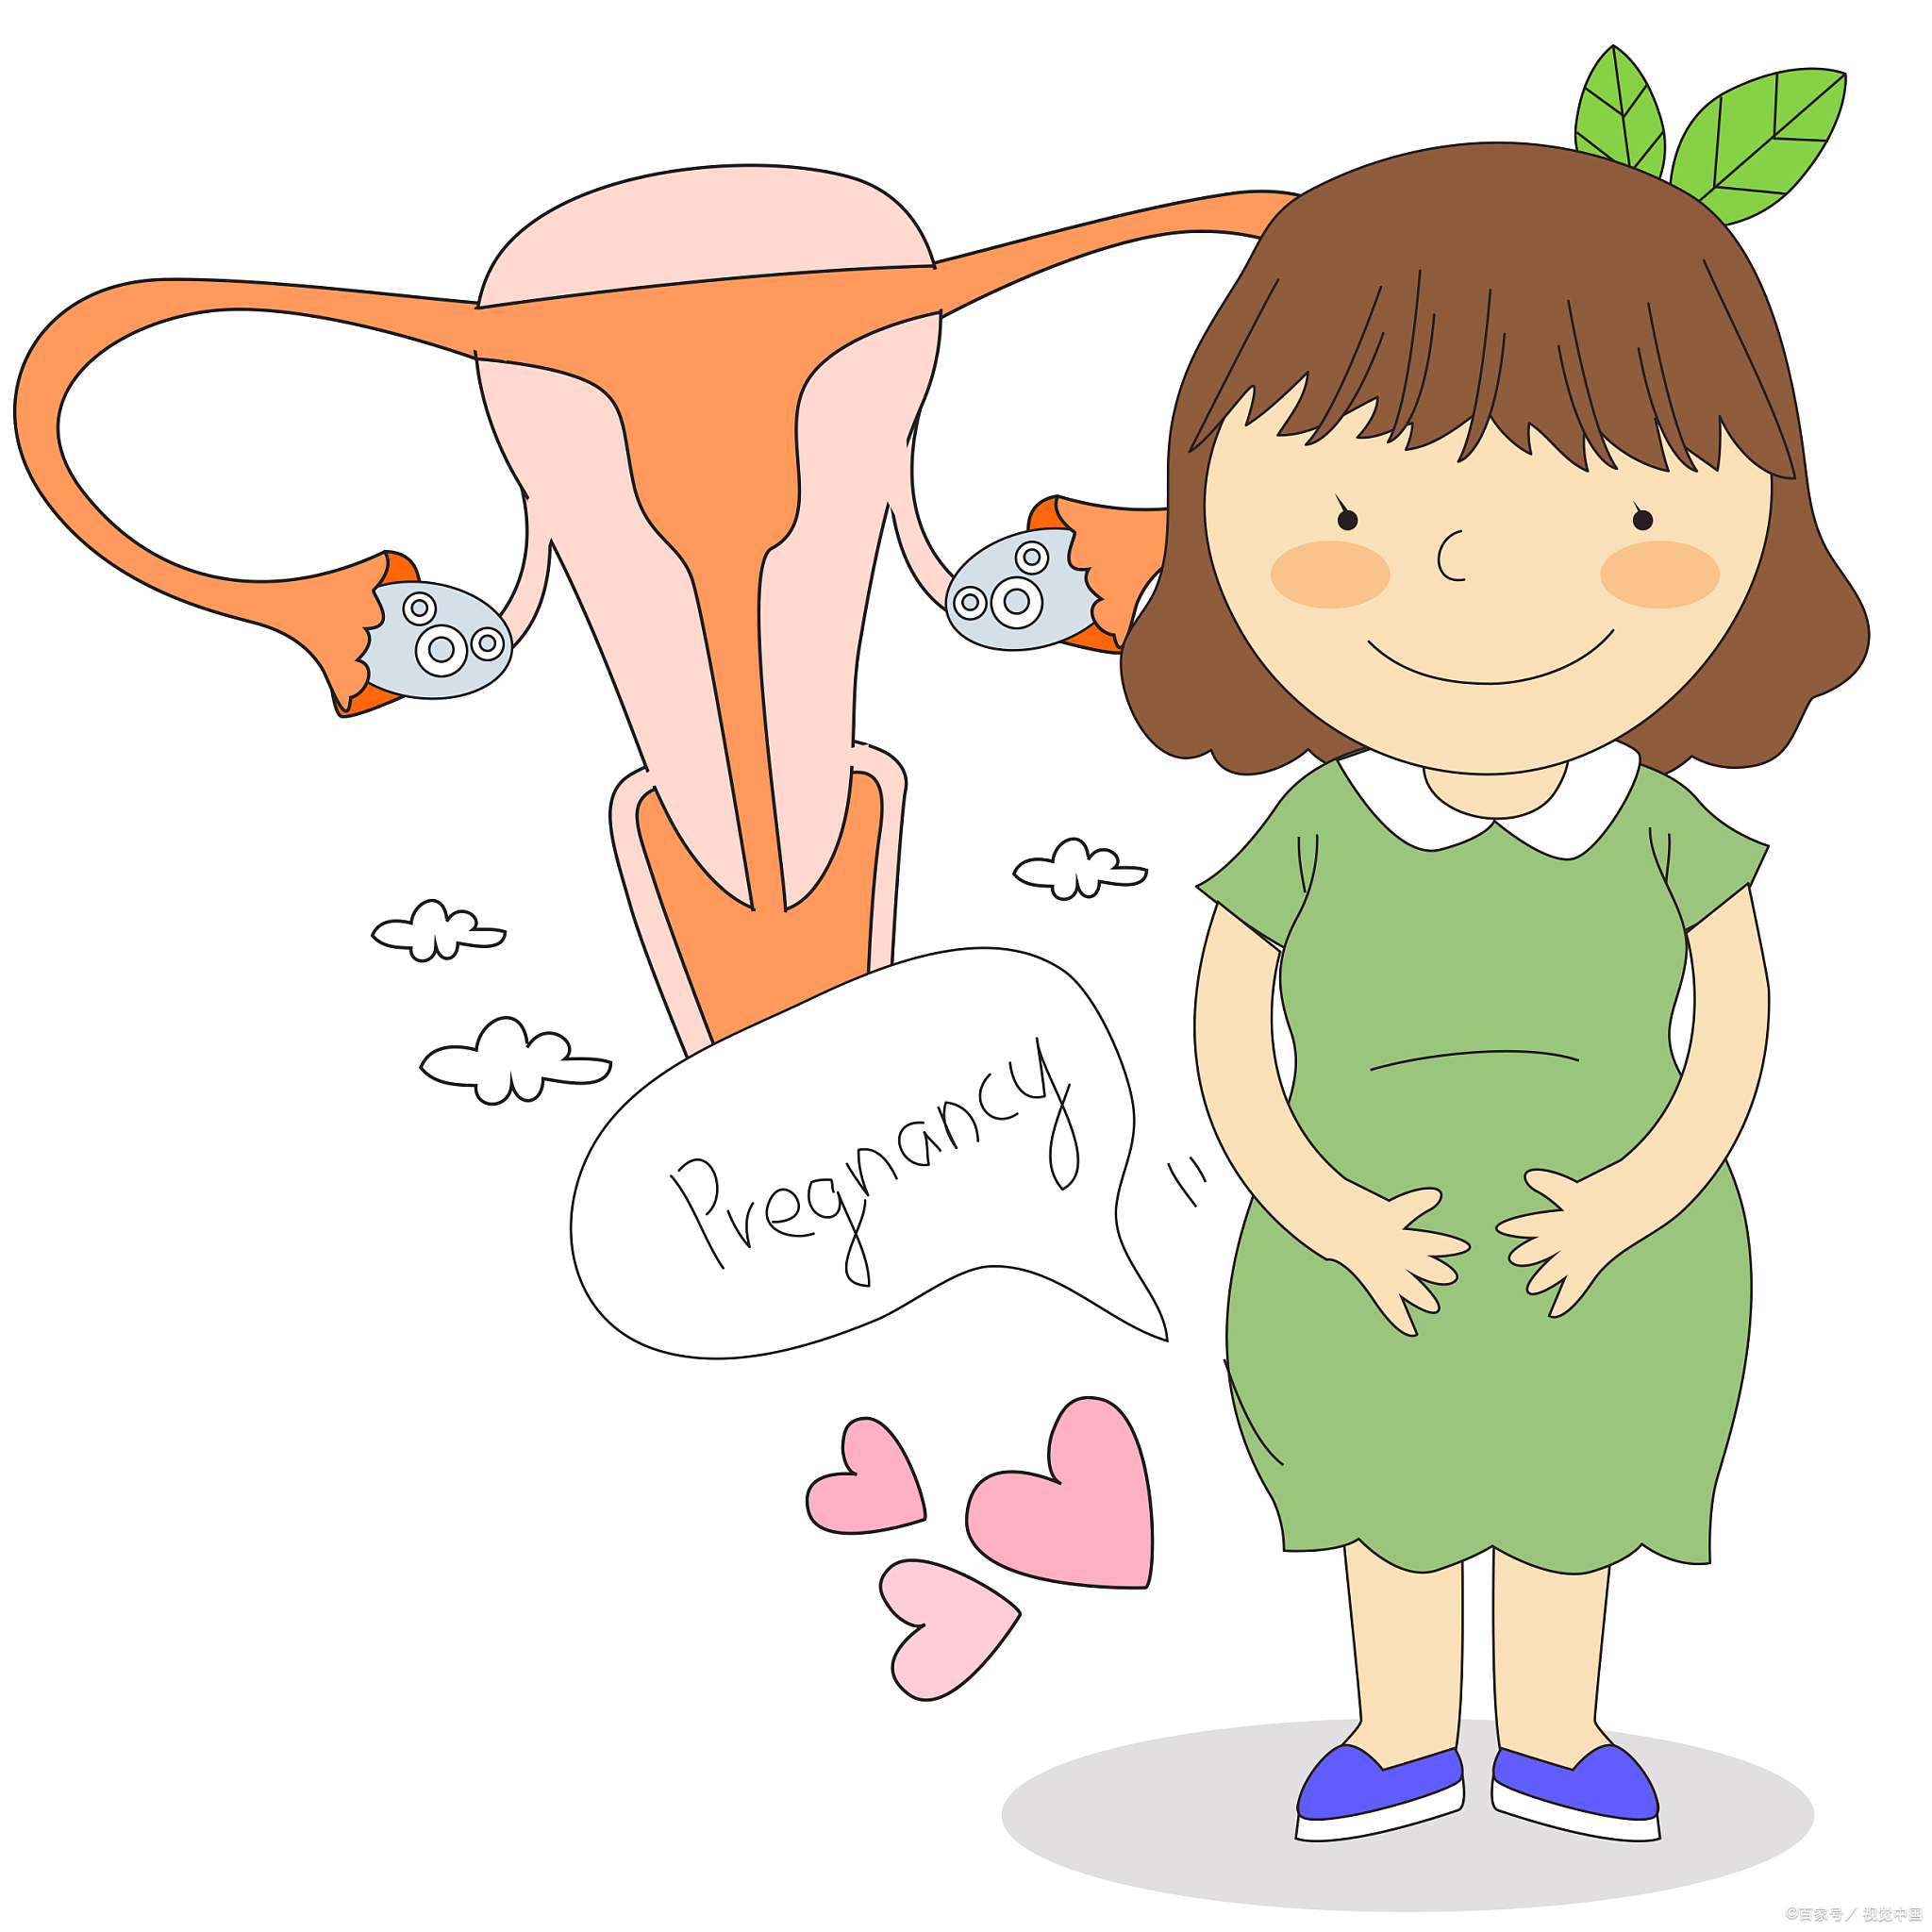 腺肌症:一种女性生殖系统疾病 腺肌症是一种女性生殖系统疾病,它指的